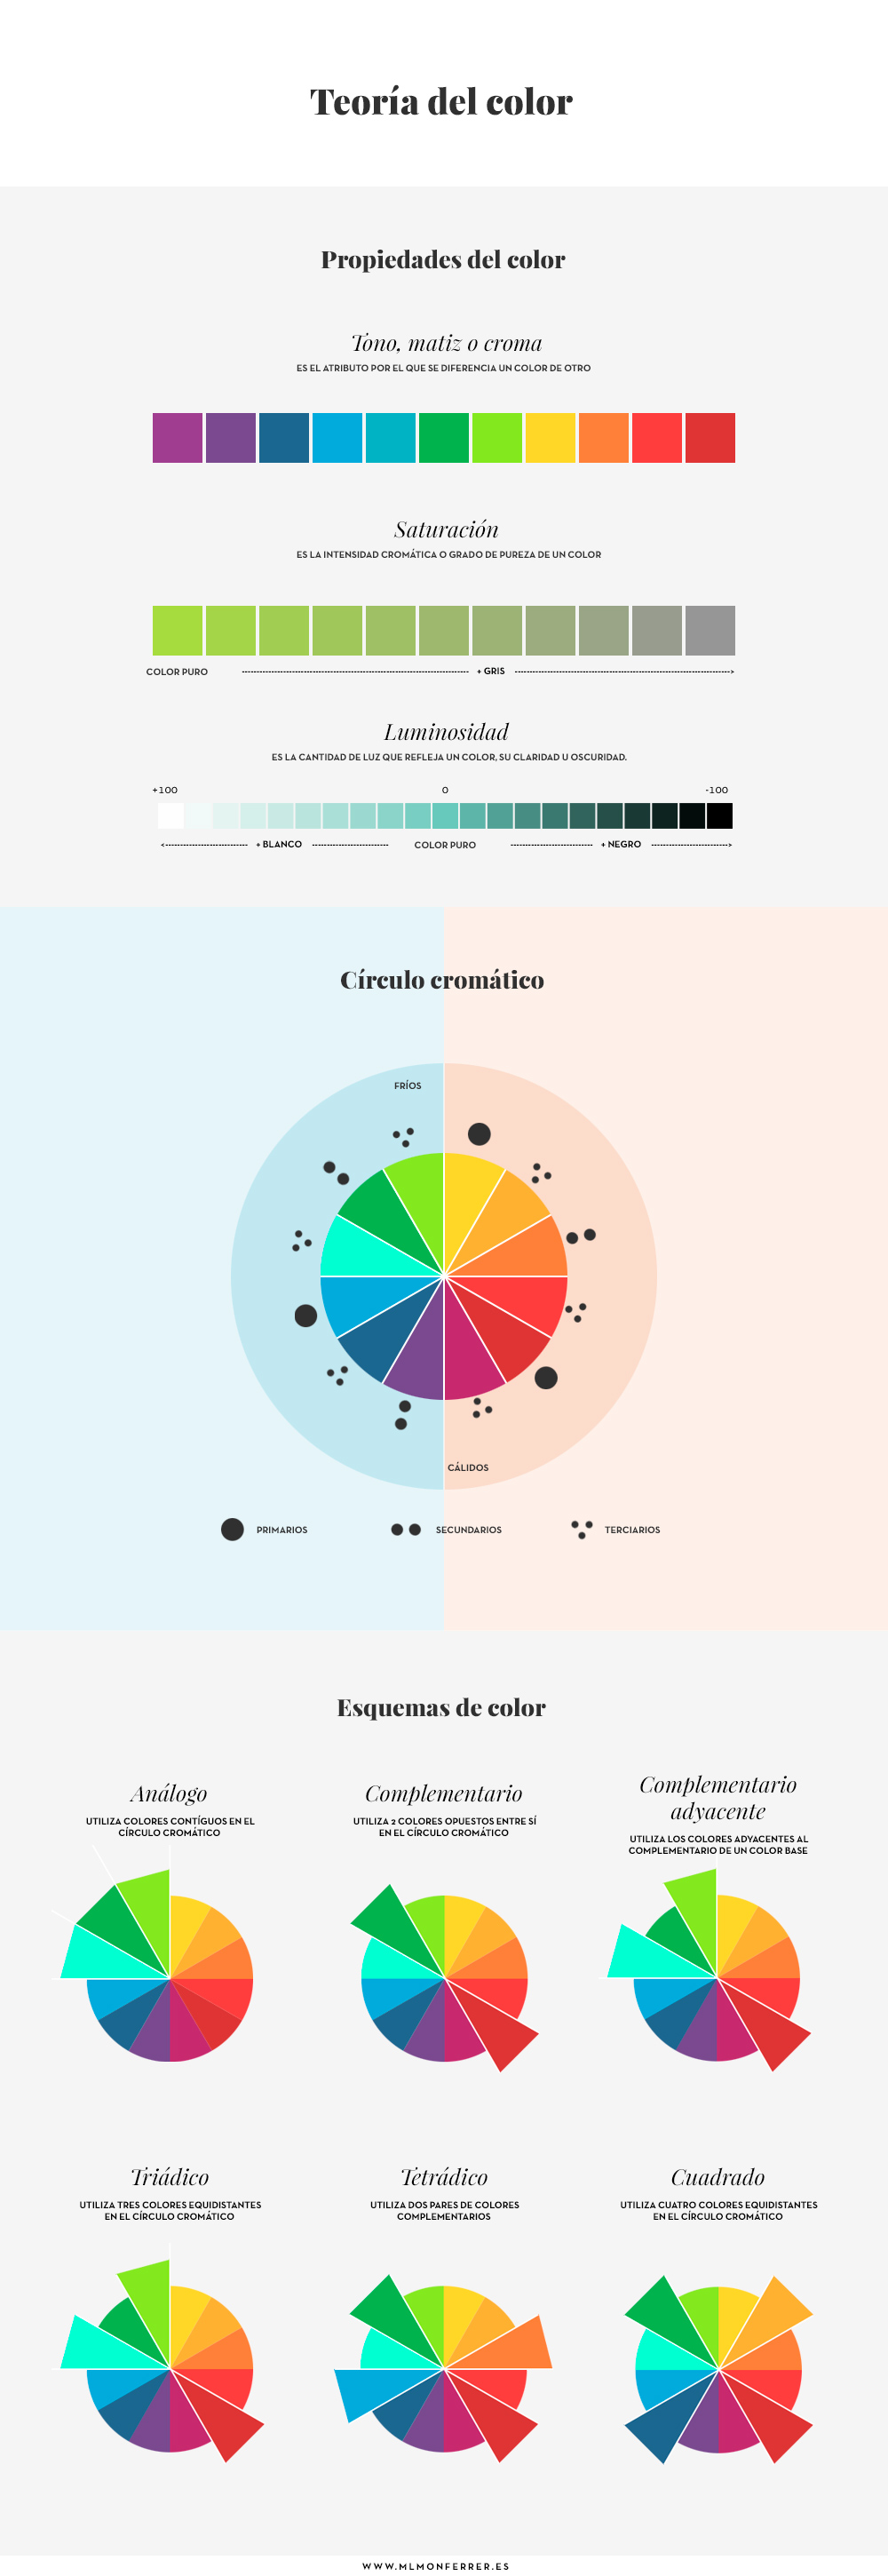 Infografía resumen de teoría del color